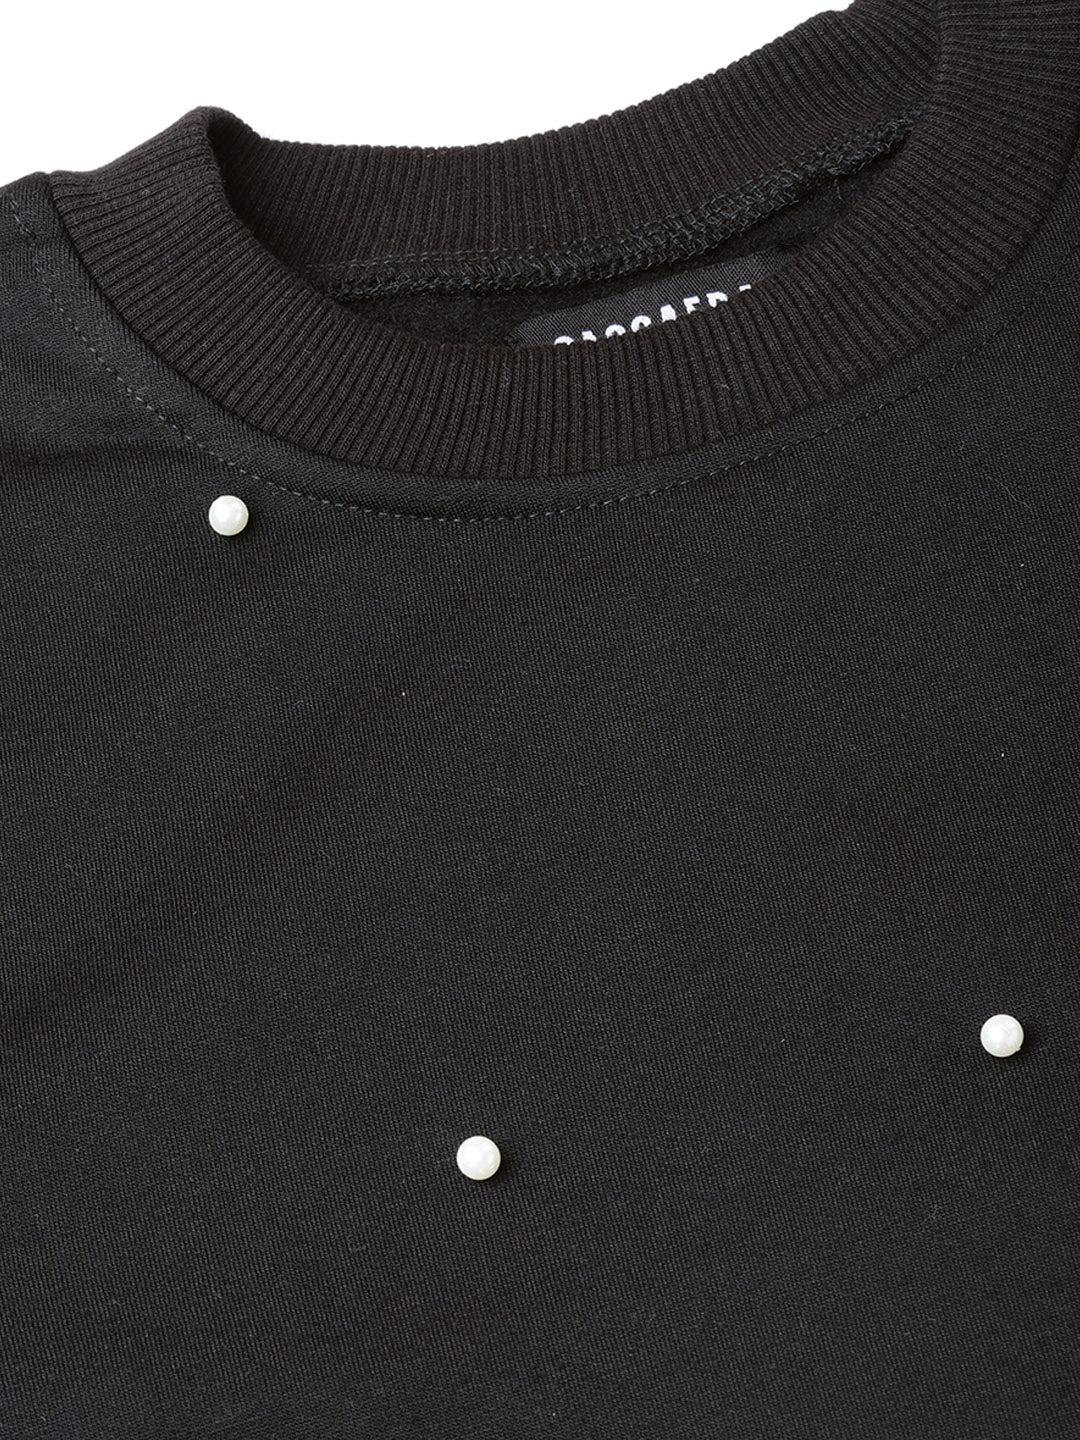 Pearl Beaded Black Sweatshirt